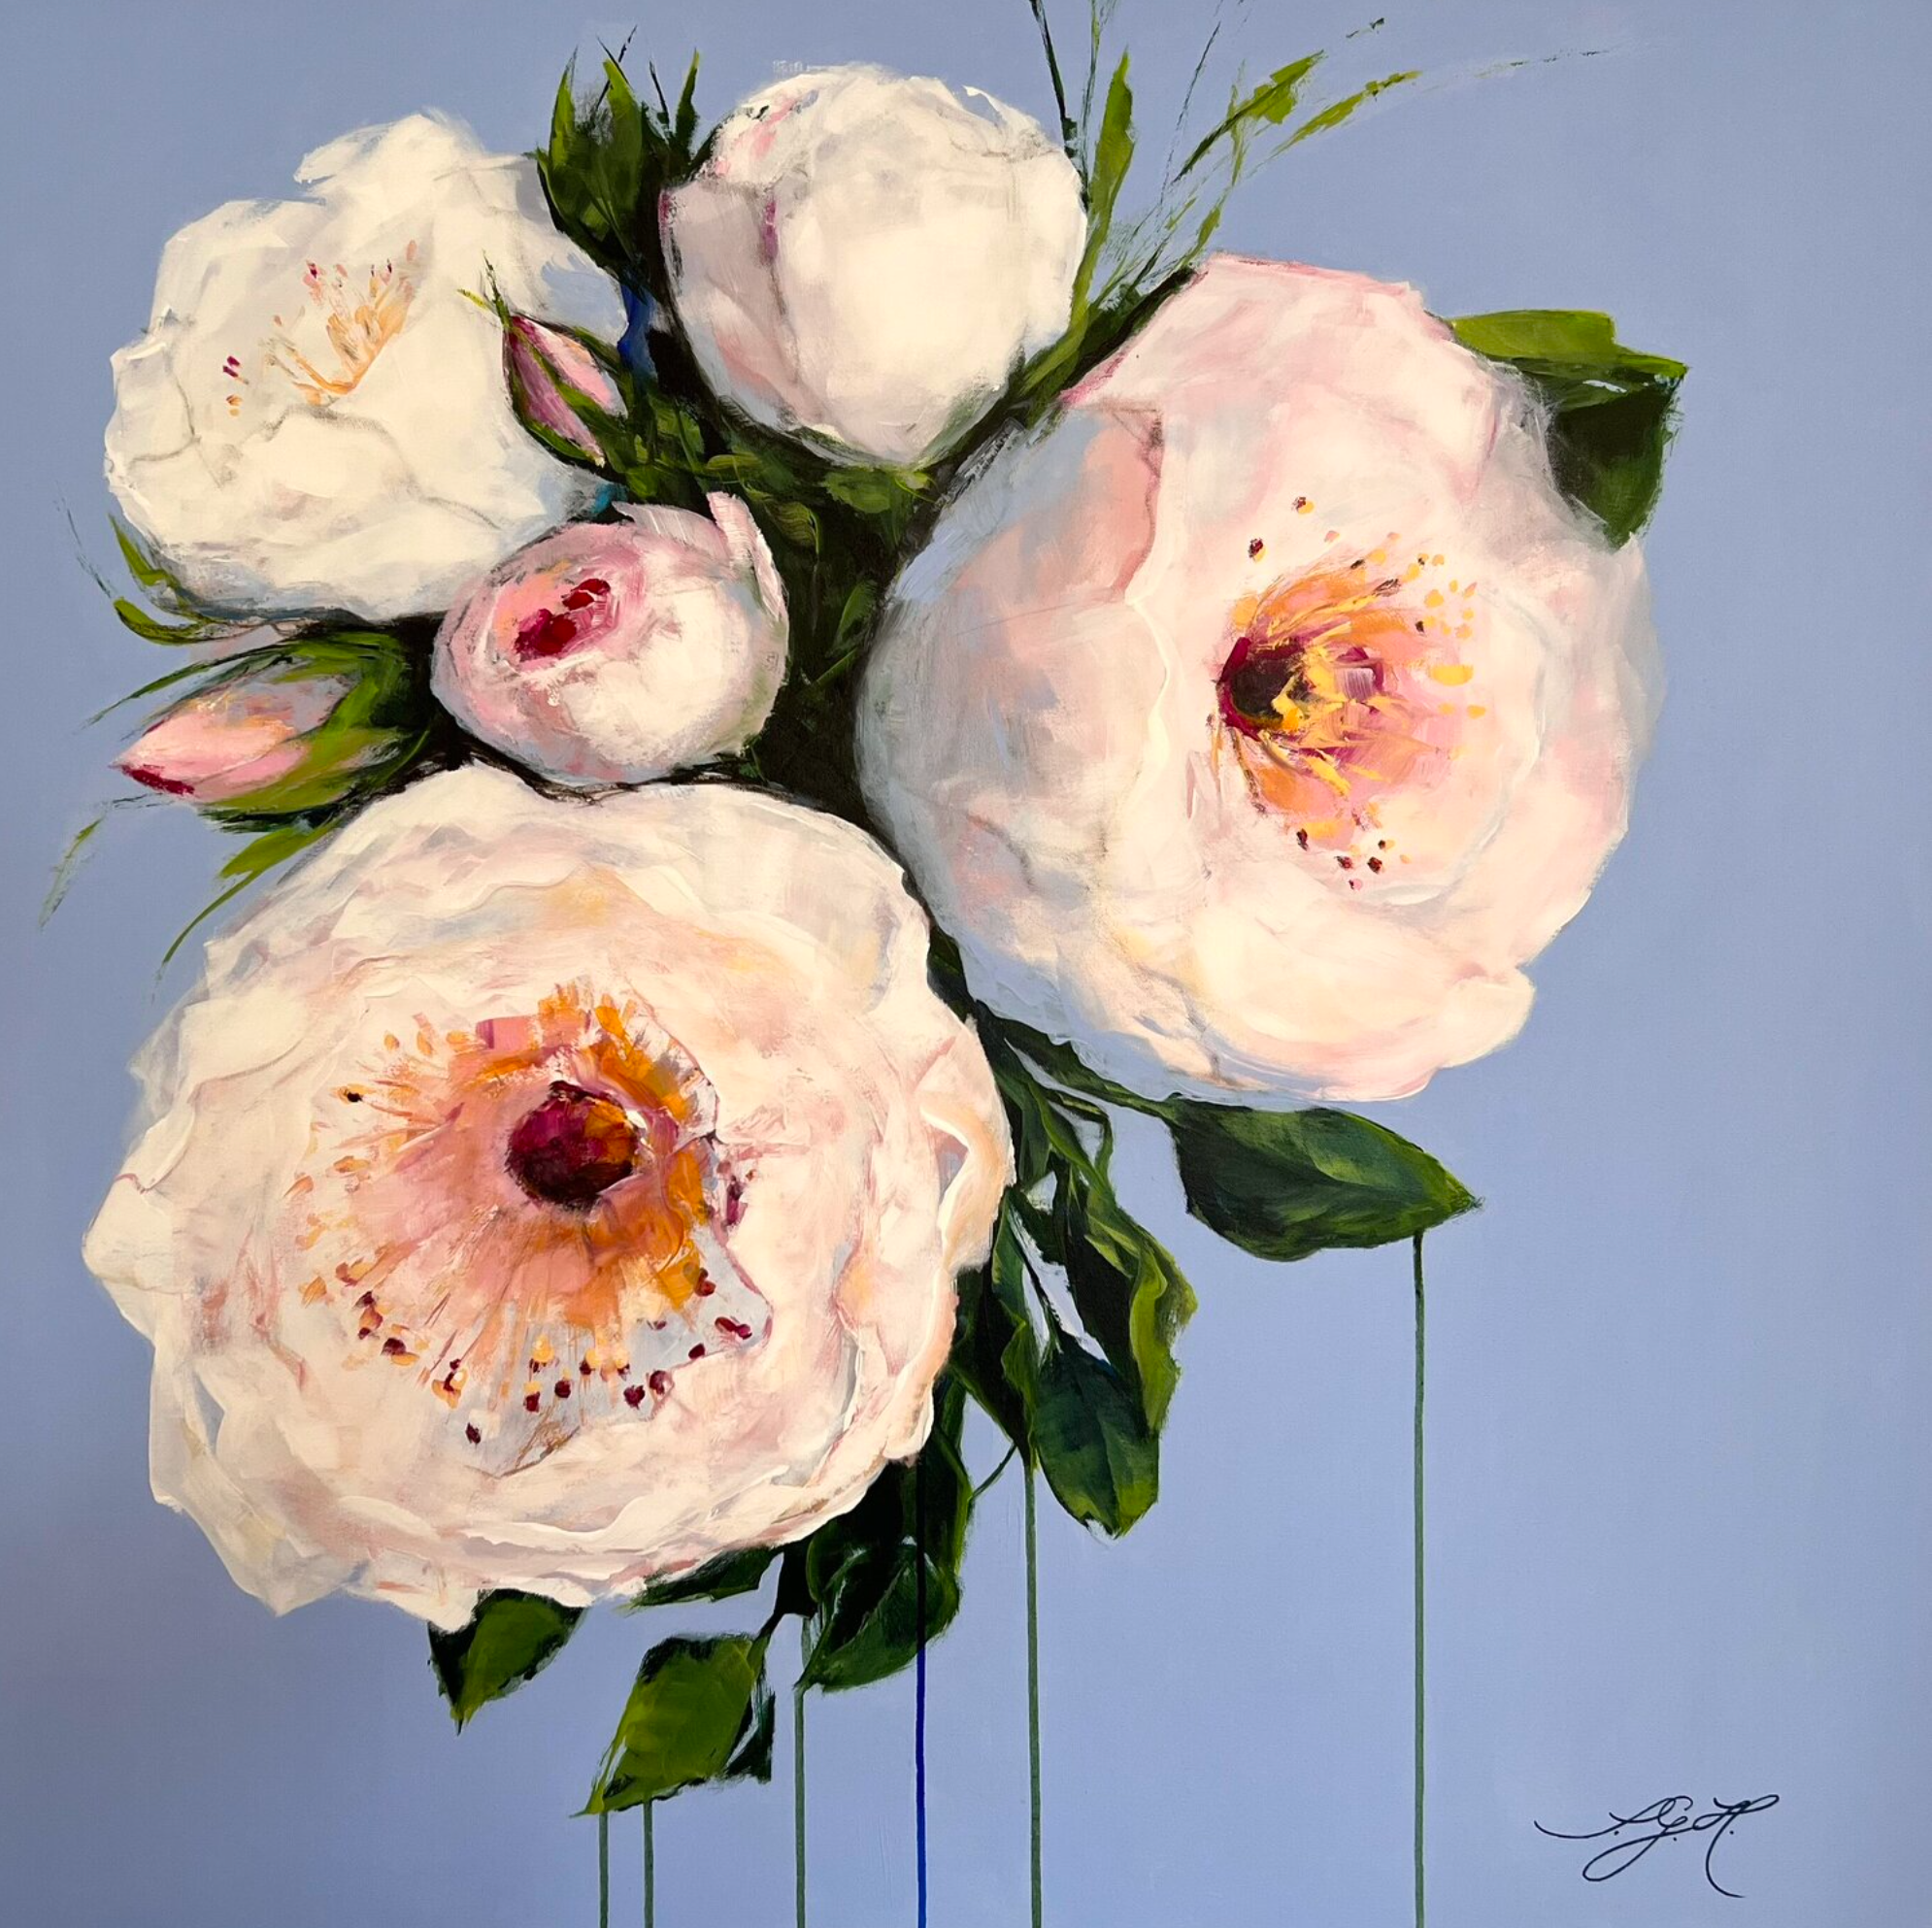 Dans les tableaux colorés "Big Flowers 3" de Sandra Gebhardt-Hoepfner, l'artiste a disposé ici des roses blanches, roses et roses avec des feuilles vertes juteuses et vert clair sur un fond bleu clair, lavande. Ce sont les roses de l'année de son jardin estival à Hambourg. Les fleurs blanches brillent presque en transparence et sont légères comme une plume.